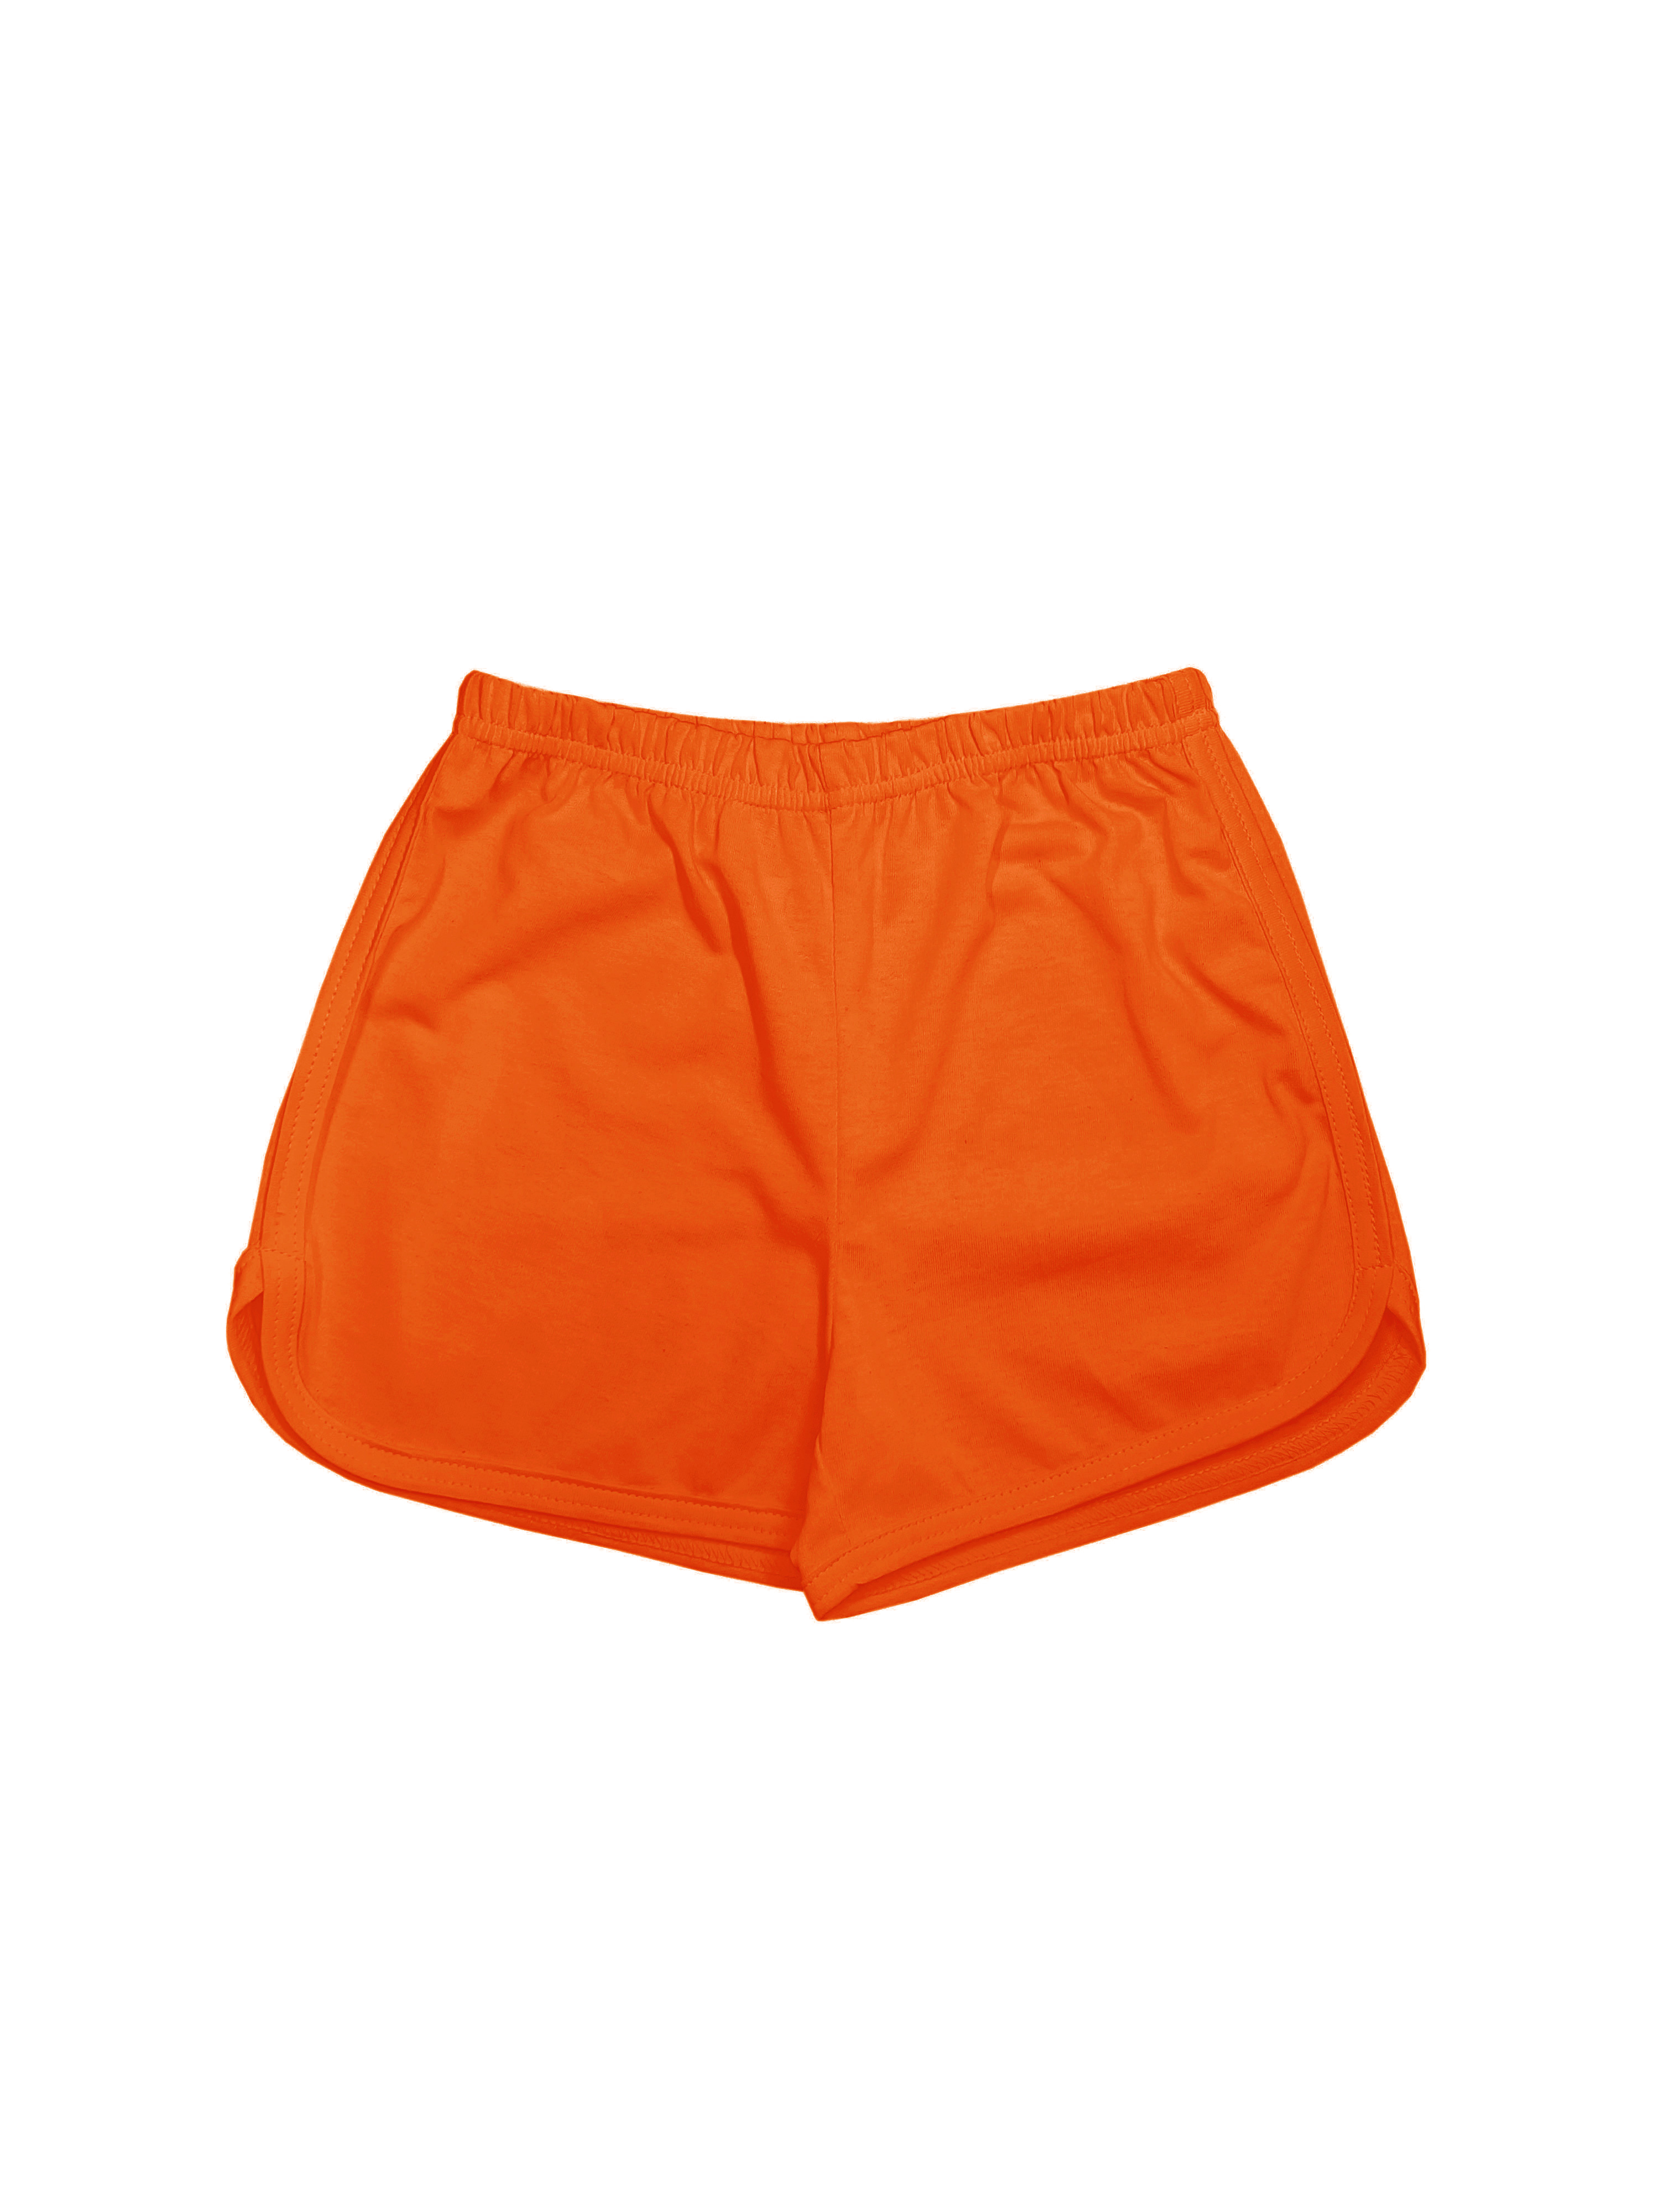 Шорты детские Детрик ШД-0322, оранжевый, 128 мяч для художественной гимнастики однотонный d19 см пвх agp 19 06 оранжевый с блестками